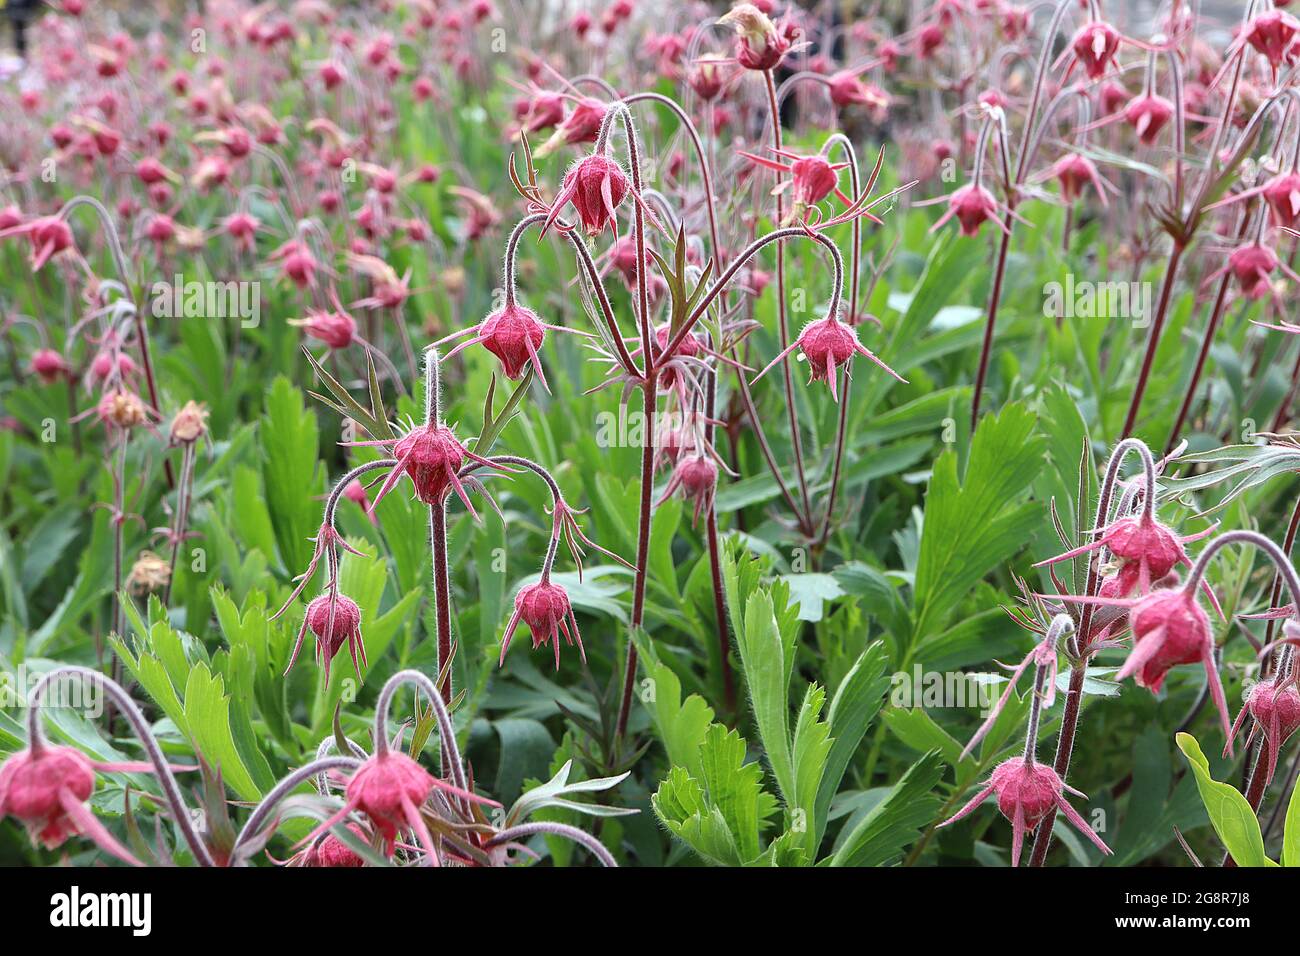 Geum triflorum Prairie fumo – chiuso fiori rossi cremisi e grandi foglie pinnatamente diviso, maggio, Inghilterra, Regno Unito Foto Stock